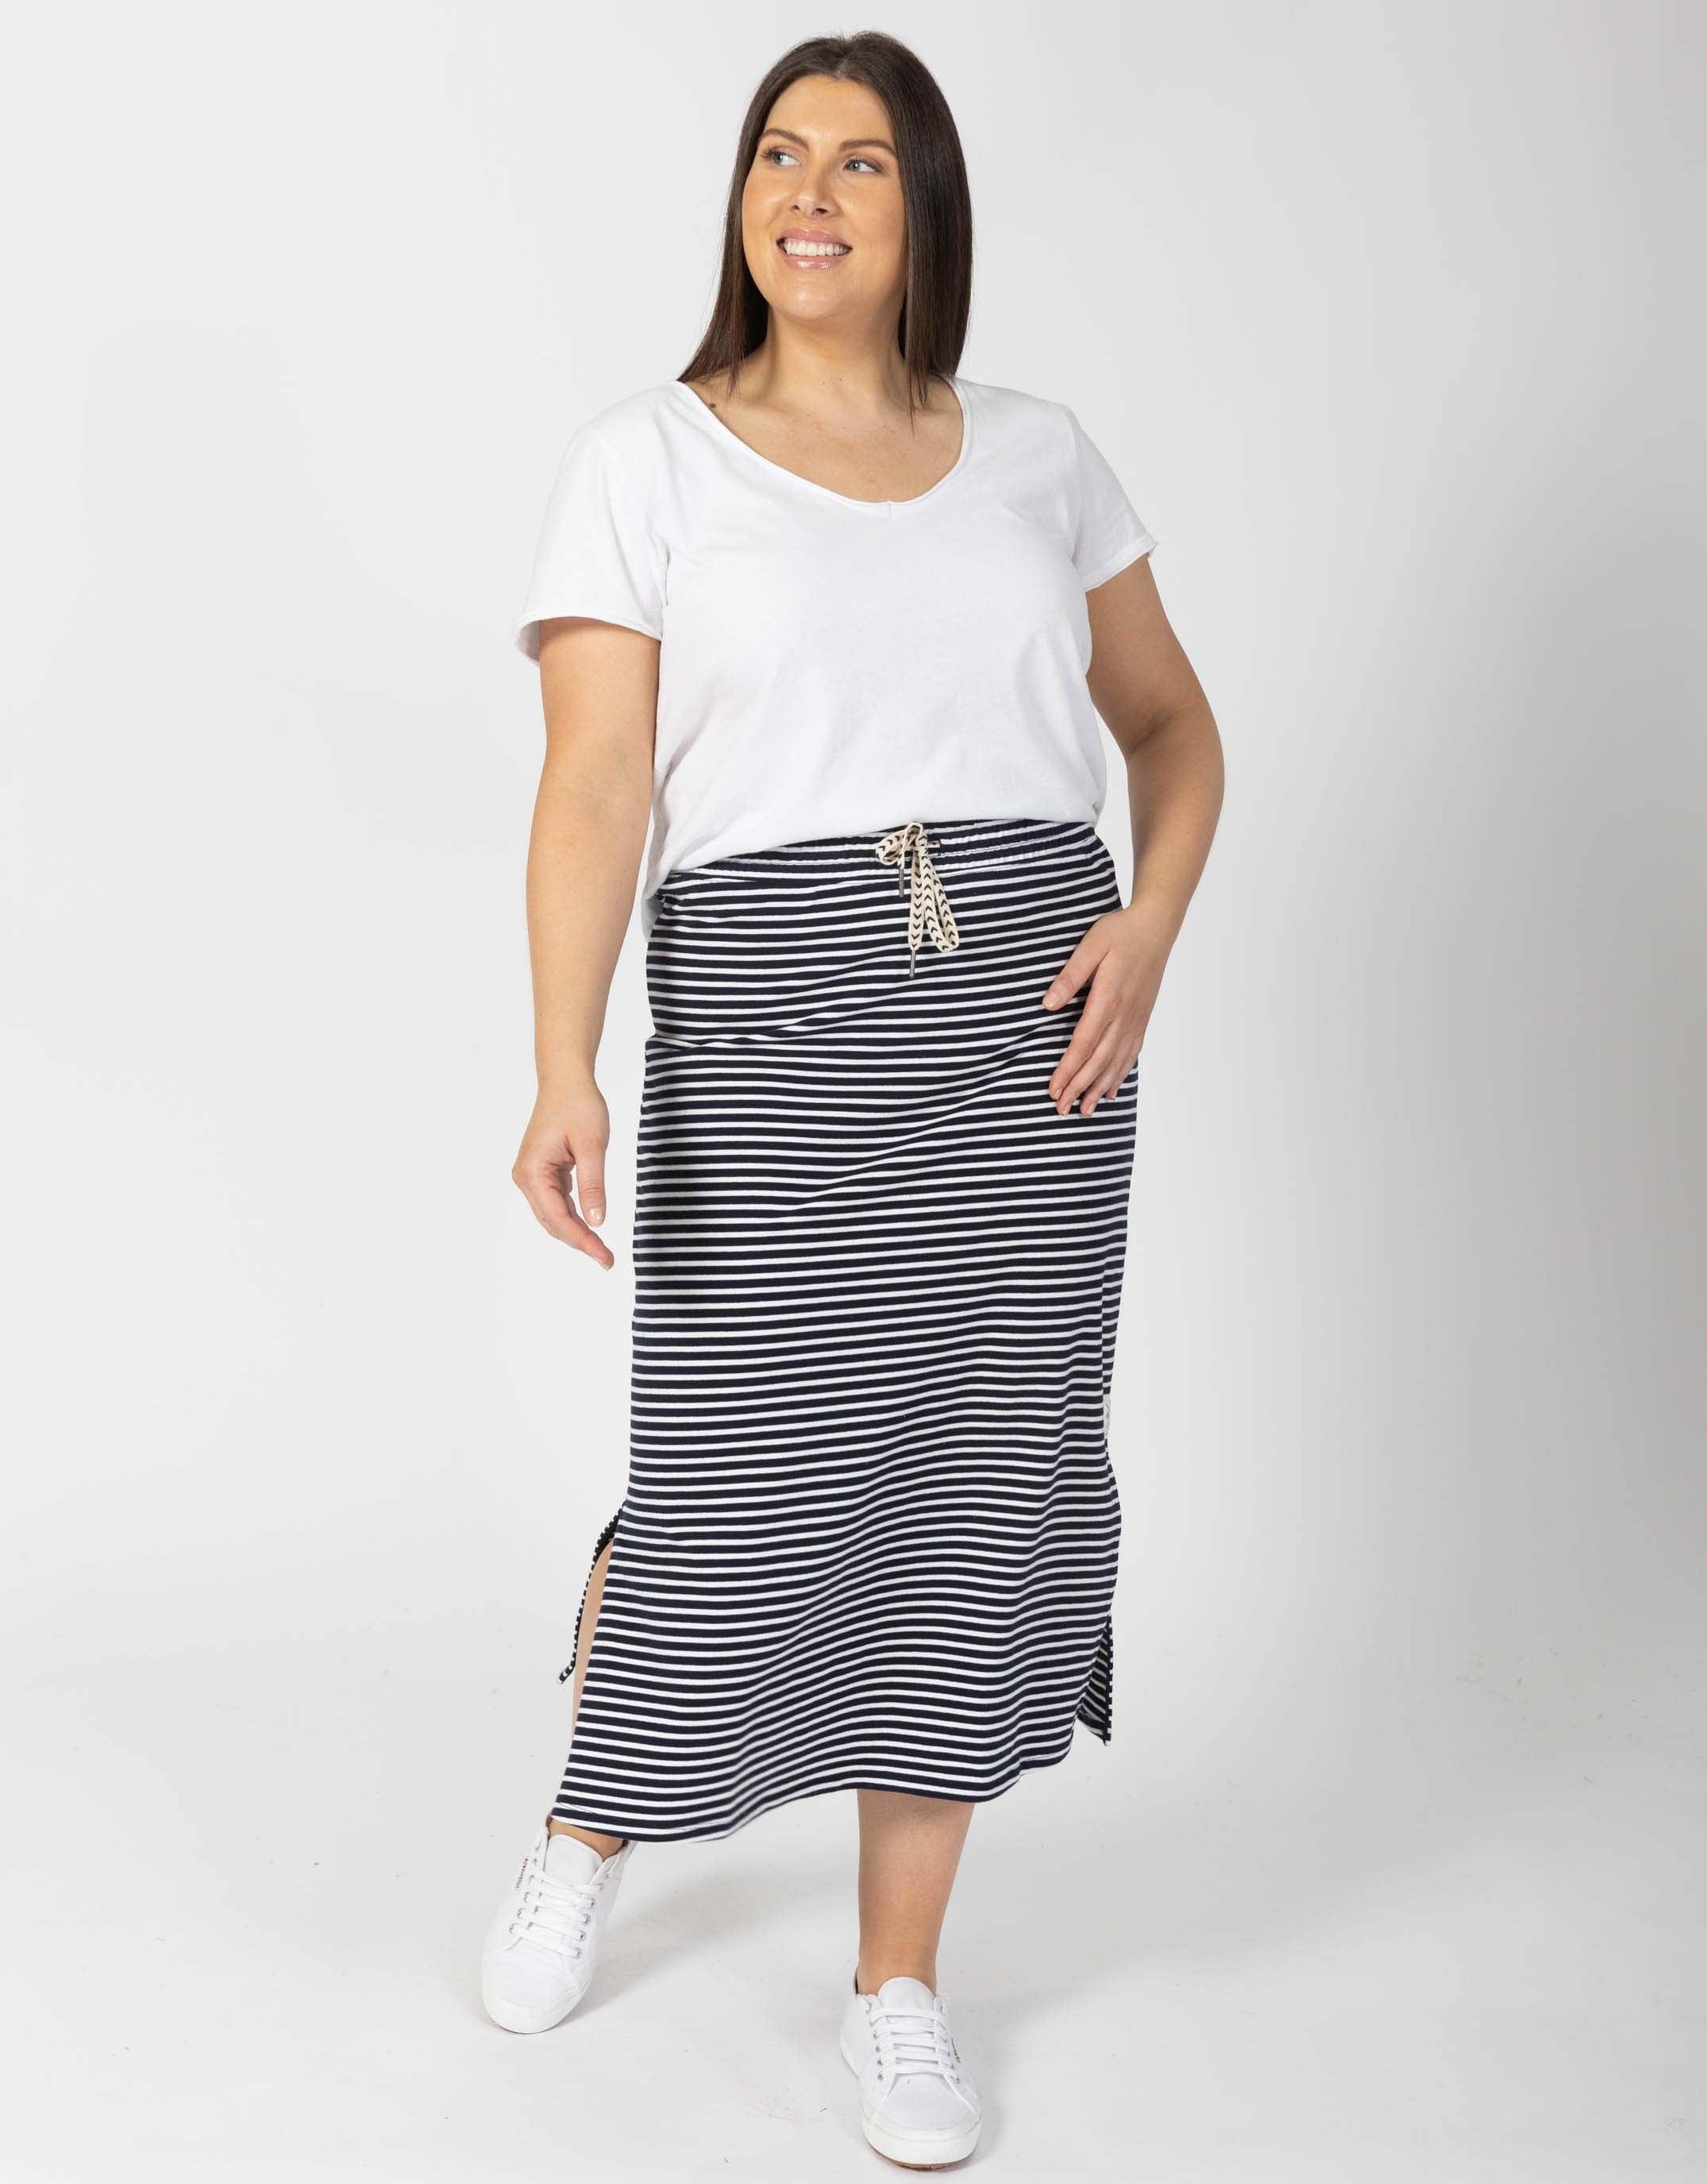 Elm - Travel Skirt - Navy/White Stripe - White & Co Living Skirts